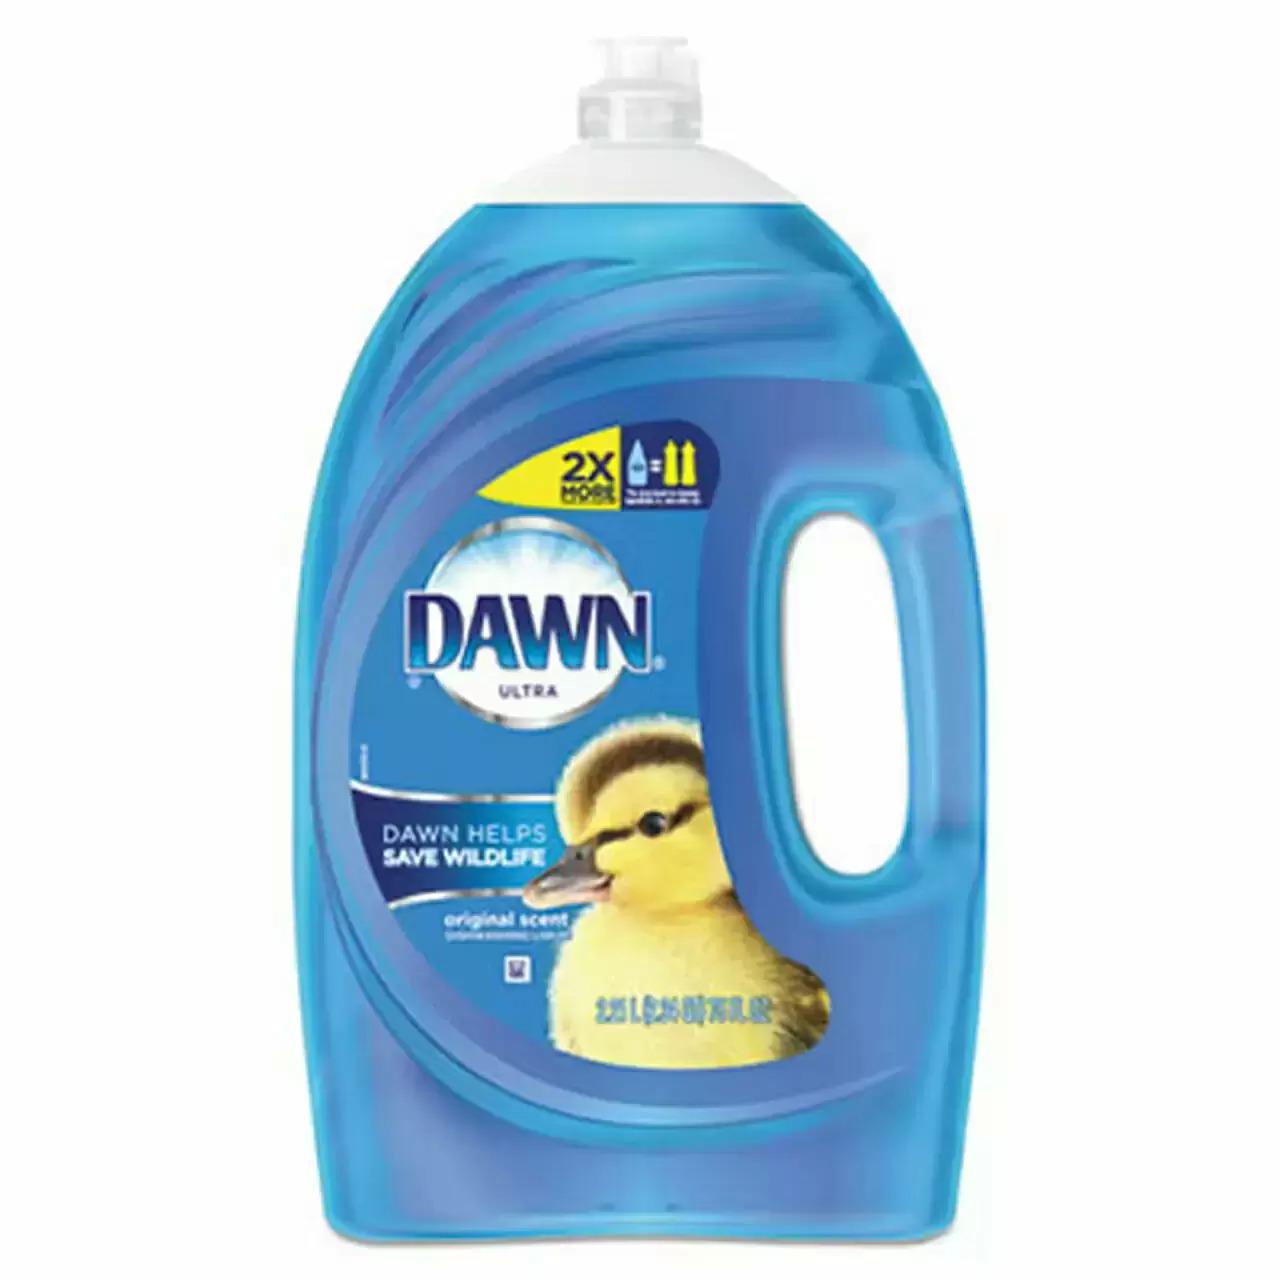 Dawn Dishwashing Liquid 75oz for $7